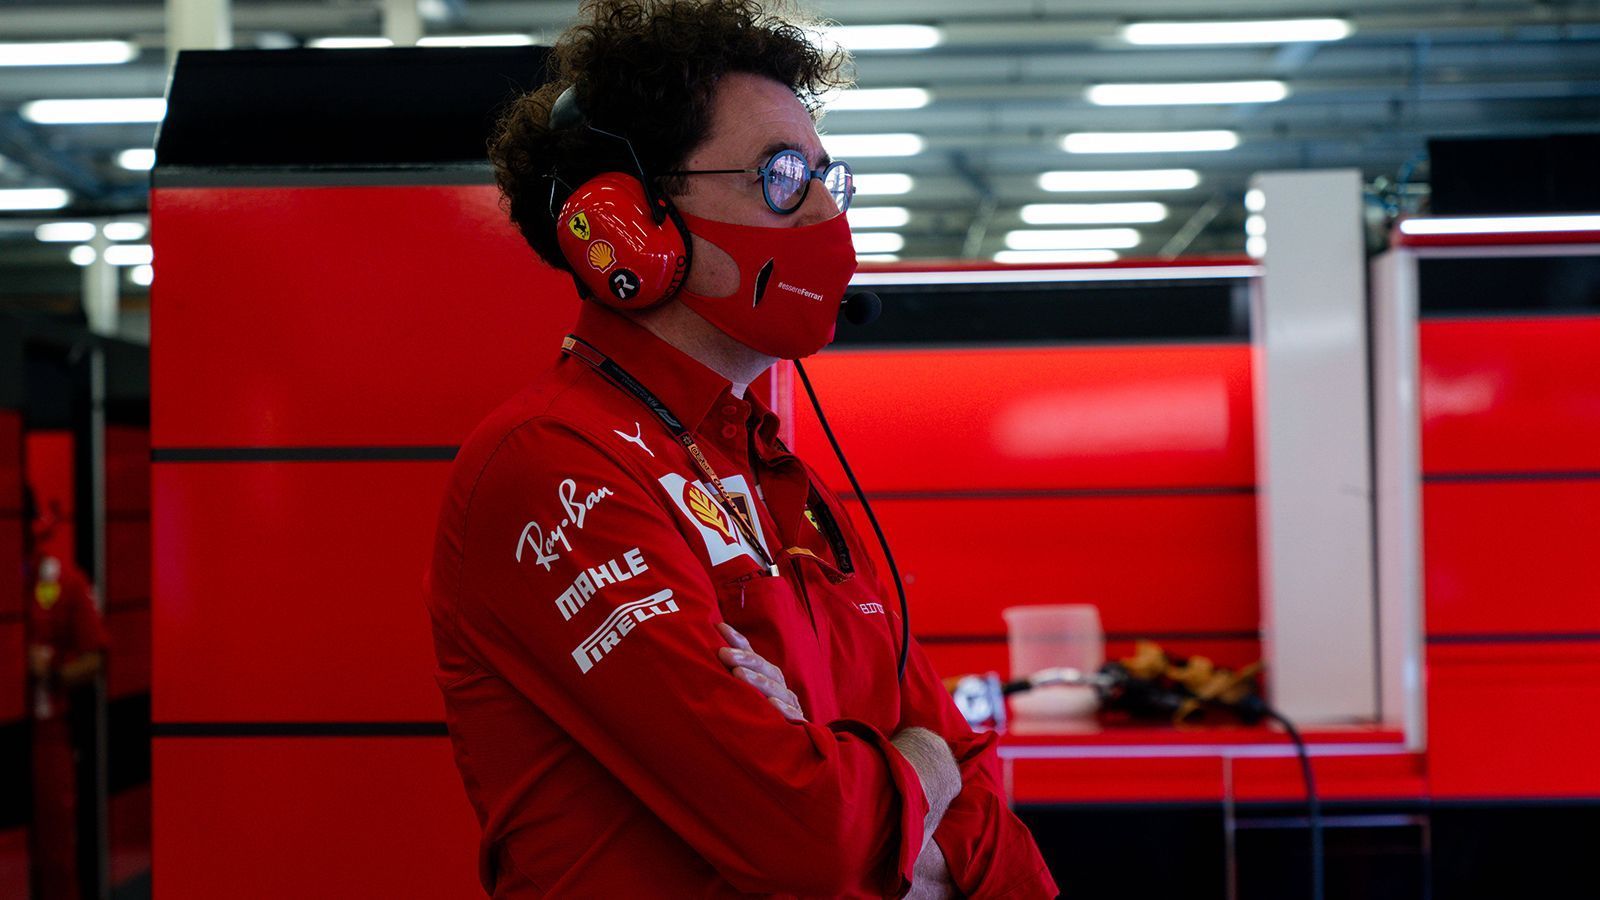 
                <strong>VERLIERER: Ferrari</strong><br>
                Der Druck auf Teamchef Mattia Binotto wächst Woche für Woche. Zu deutlich sind die Abstände zwischen Leclerc und Vettel, zu wild die taktischen Ausrichtungen. Dass das Auto unter normalen Umständen nicht um die ersten drei Plätze mitfahren kann, ist da fast schon zur Nebensache geworden. Es brennt lichterloh - Besserung nicht in die Sicht.
              